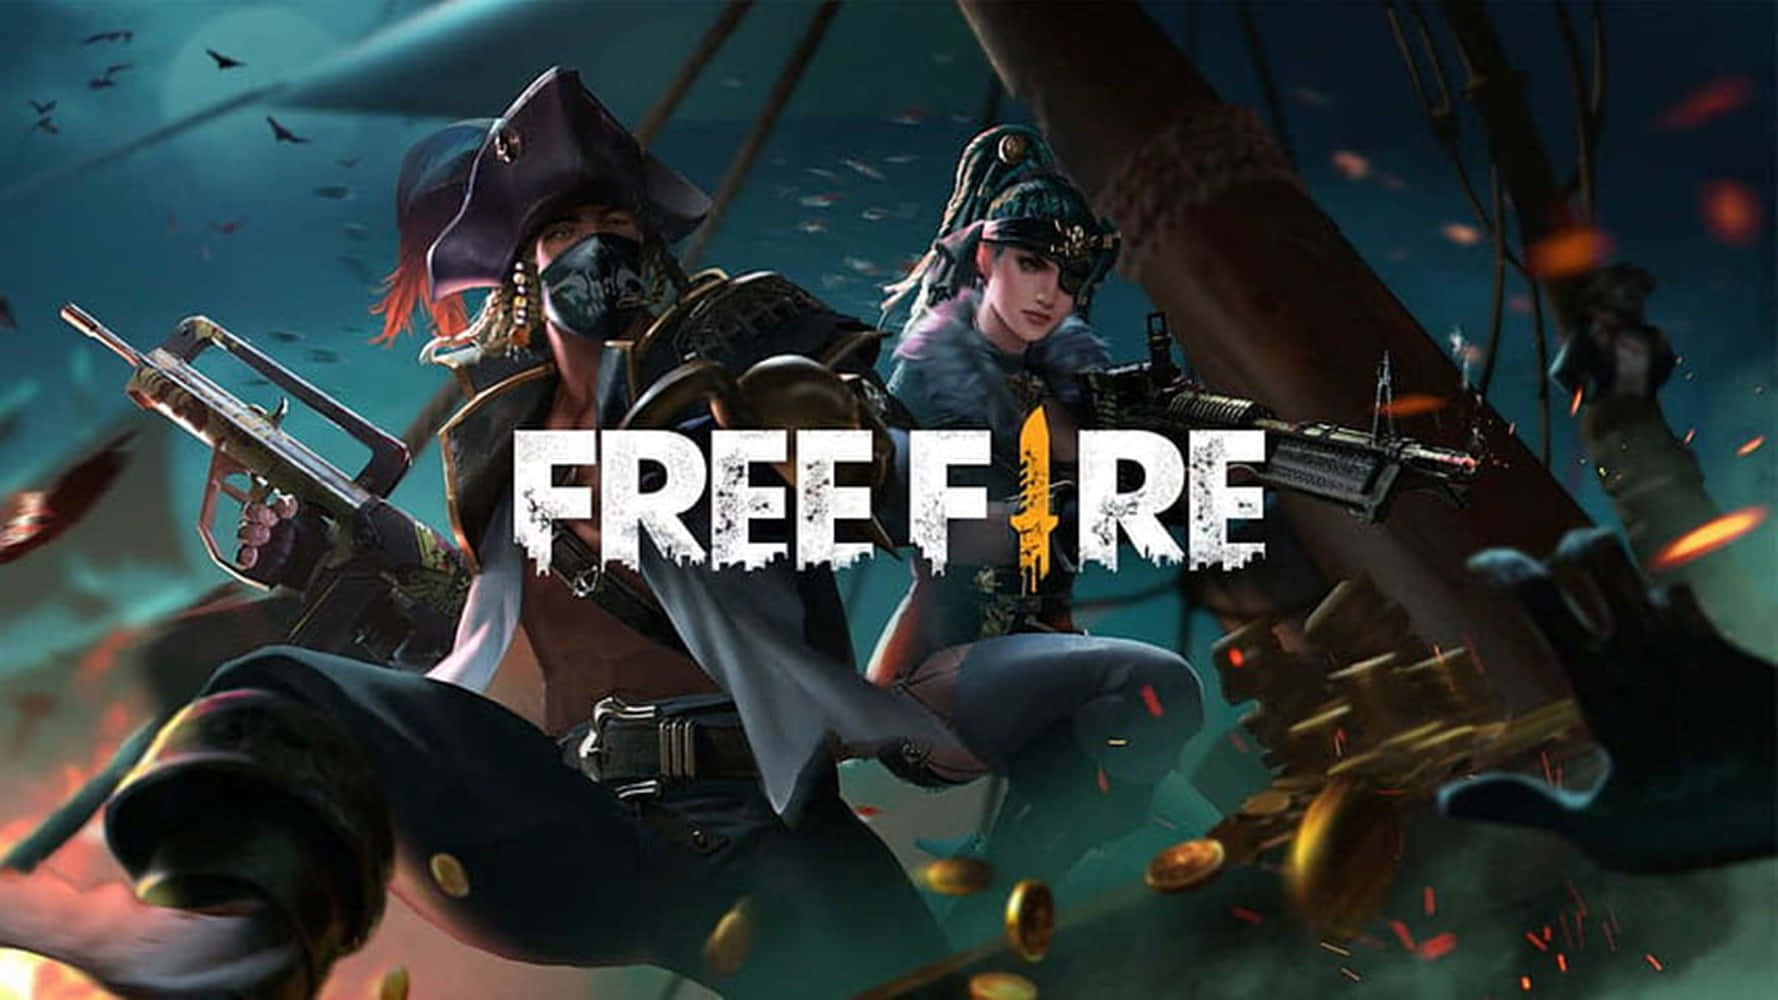 Vis din dominans på den virtuelle slagmark med den nyeste helt i Free Fire, Chrono. Wallpaper